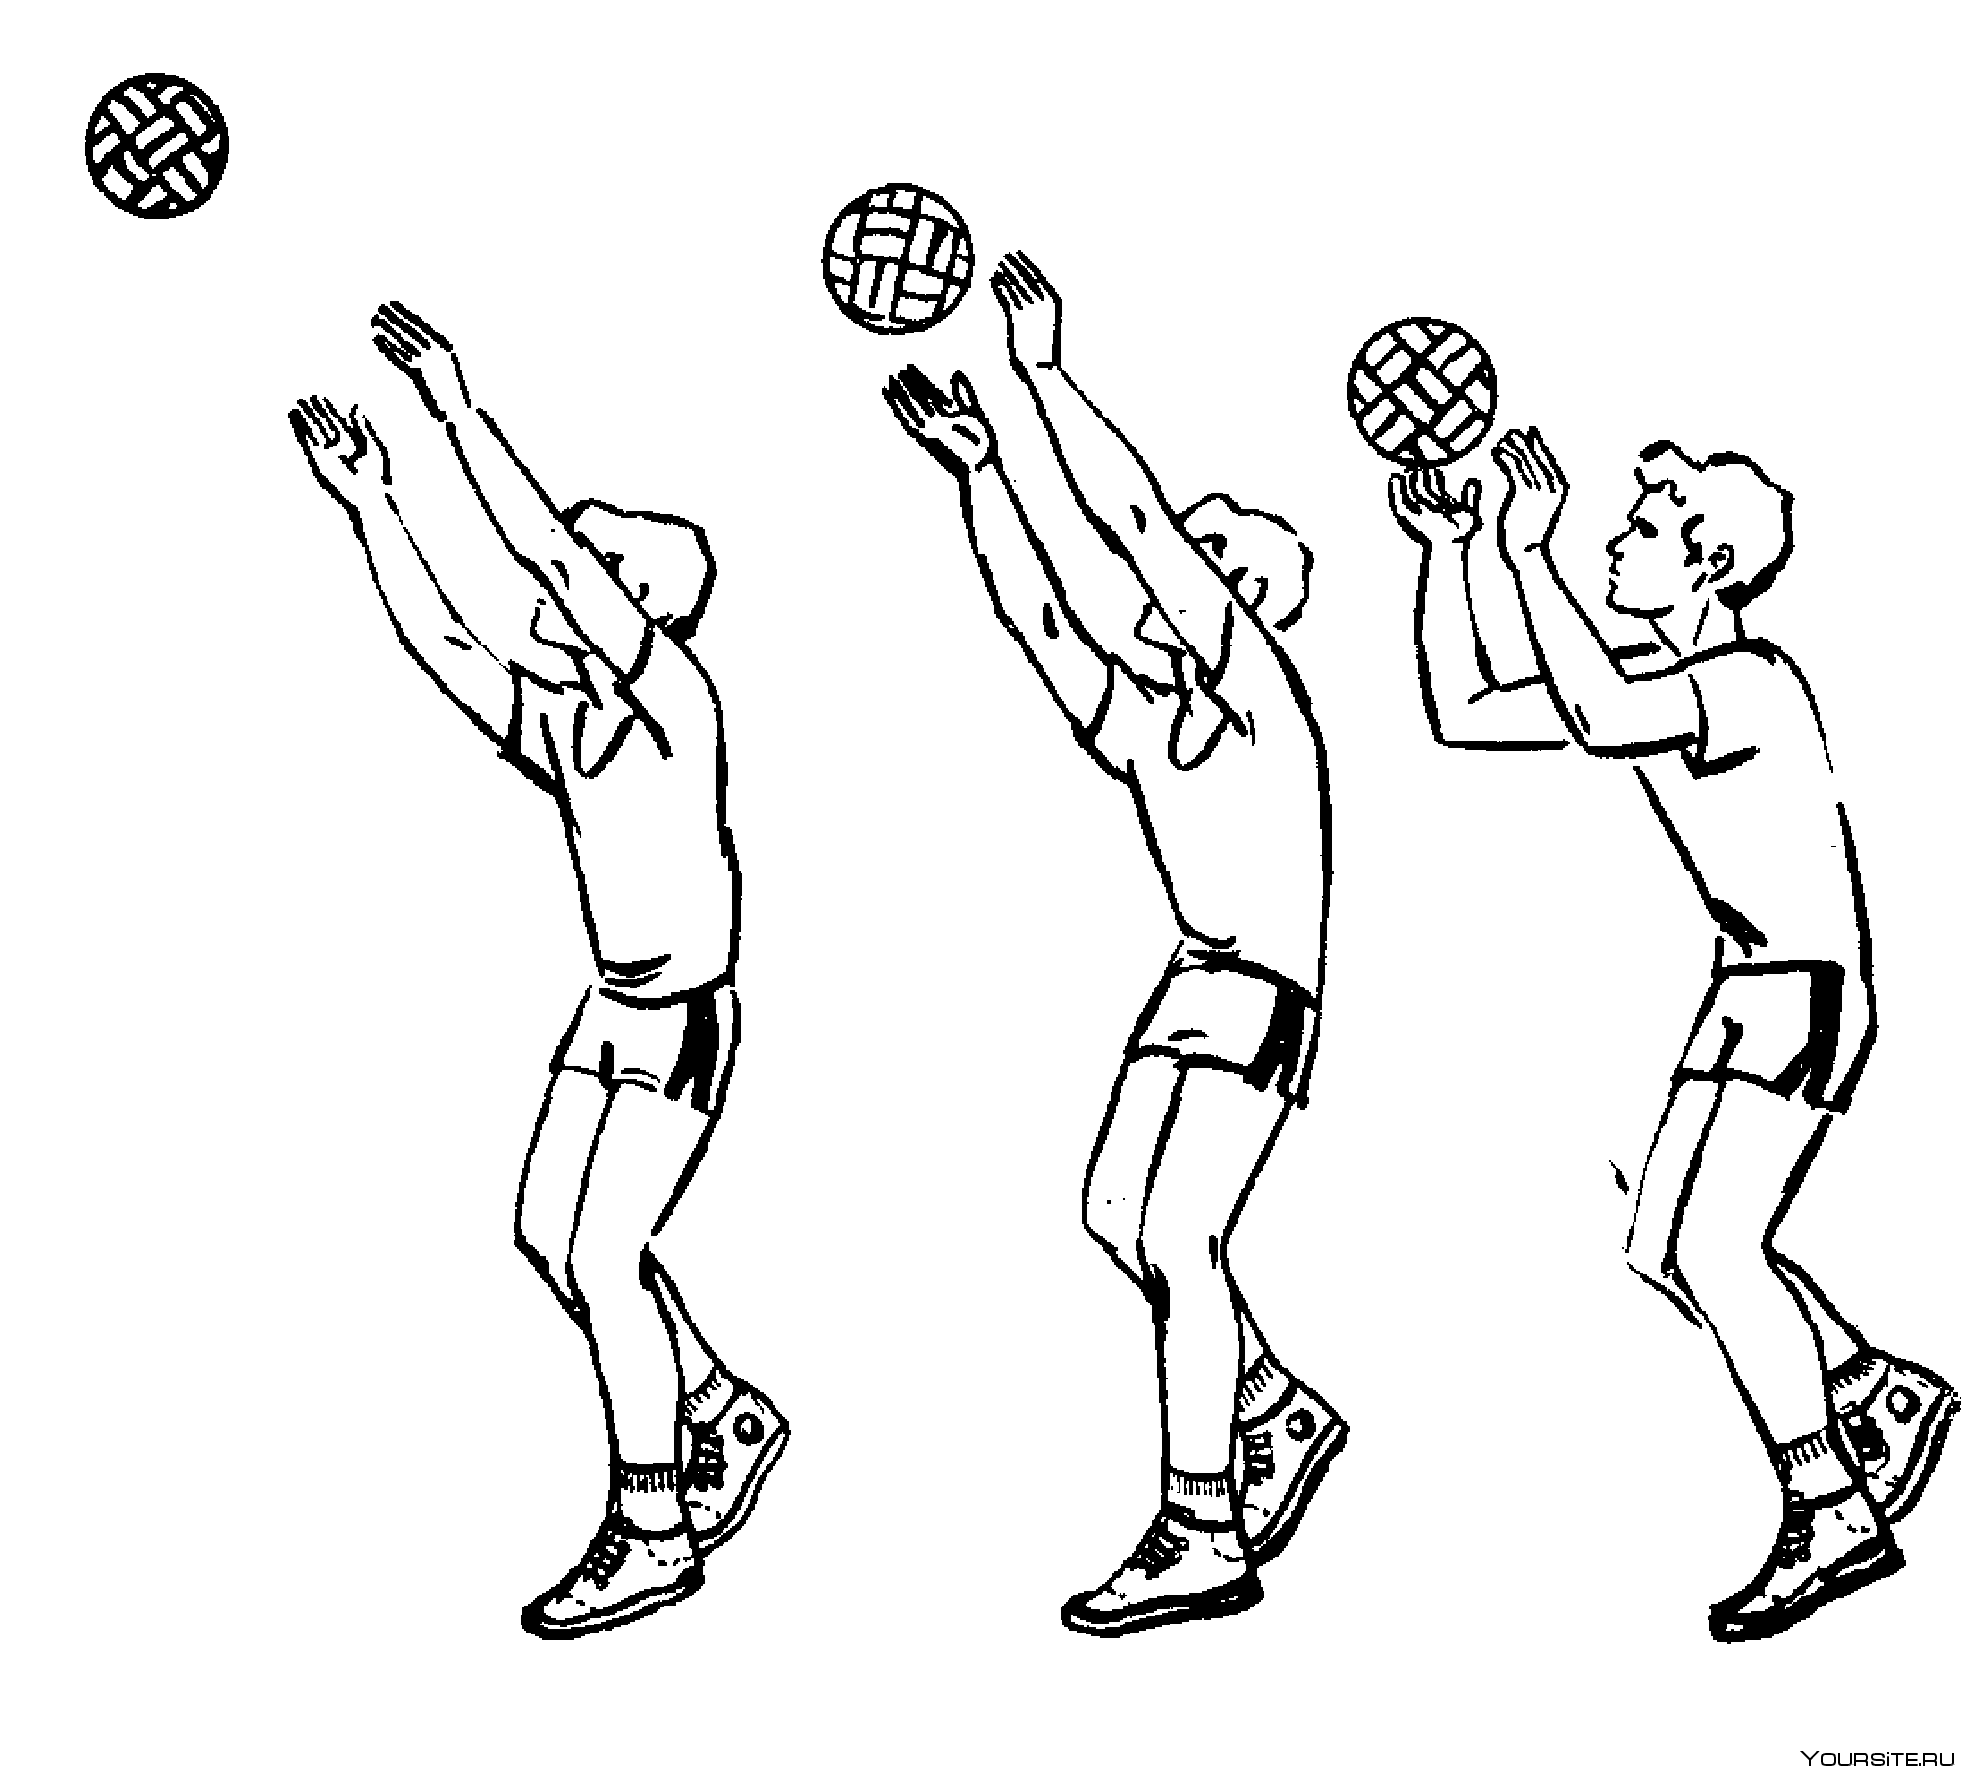 Мяч вводят в игру в волейболе. Передача мяча(сверху двумя руками ,снизу двумя руками в волейболе. Передача мяча сверху двумя руками в волейболе. Передача мяча 2 руками сверху в волейболе. Прием мяча снизу в баскетболе техника выполнения.